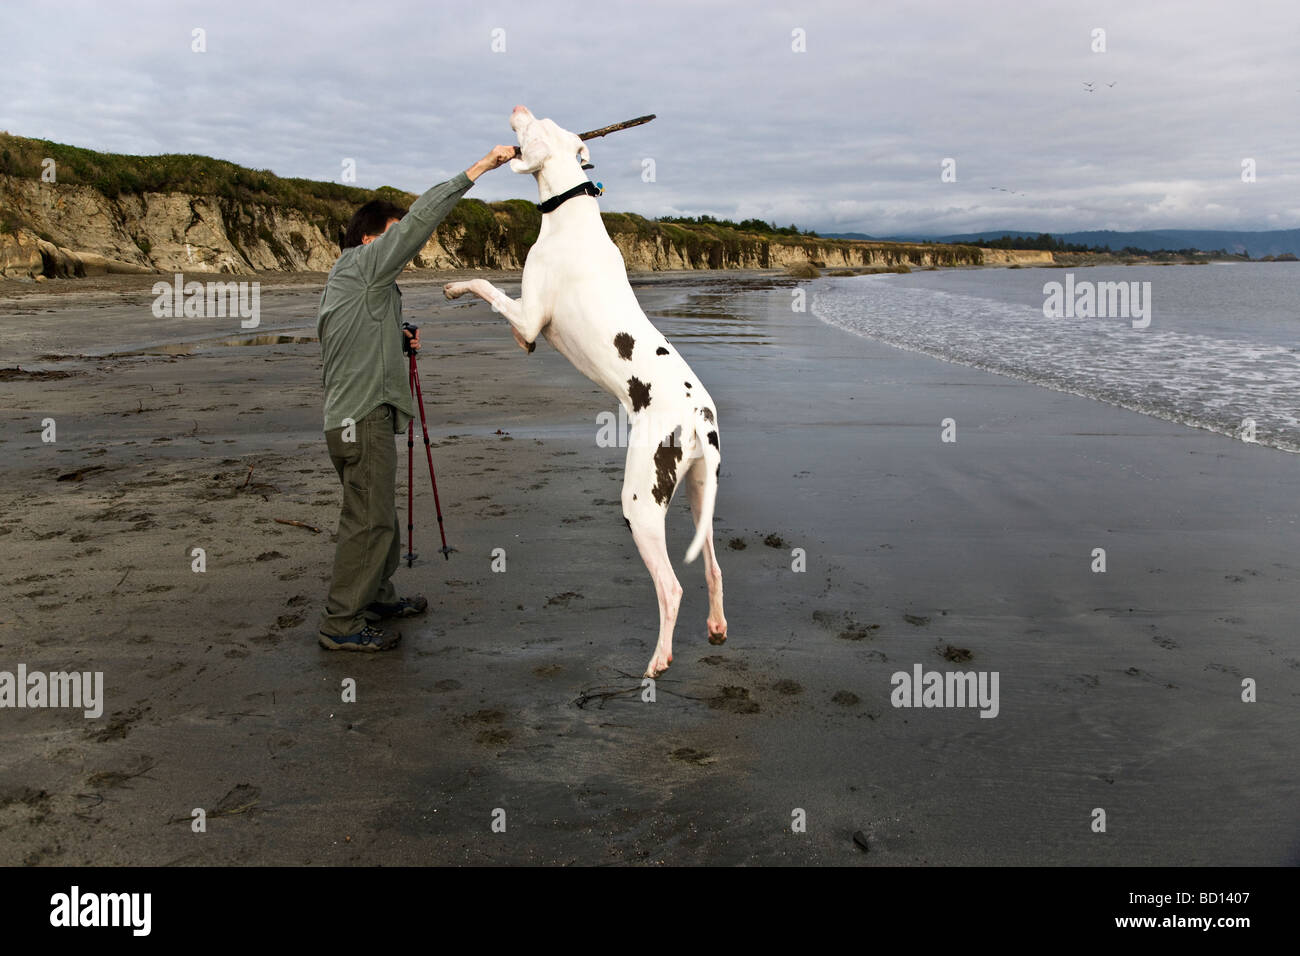 Il proprietario si prepara a lanciare stick per un alano, presso la spiaggia. Foto Stock